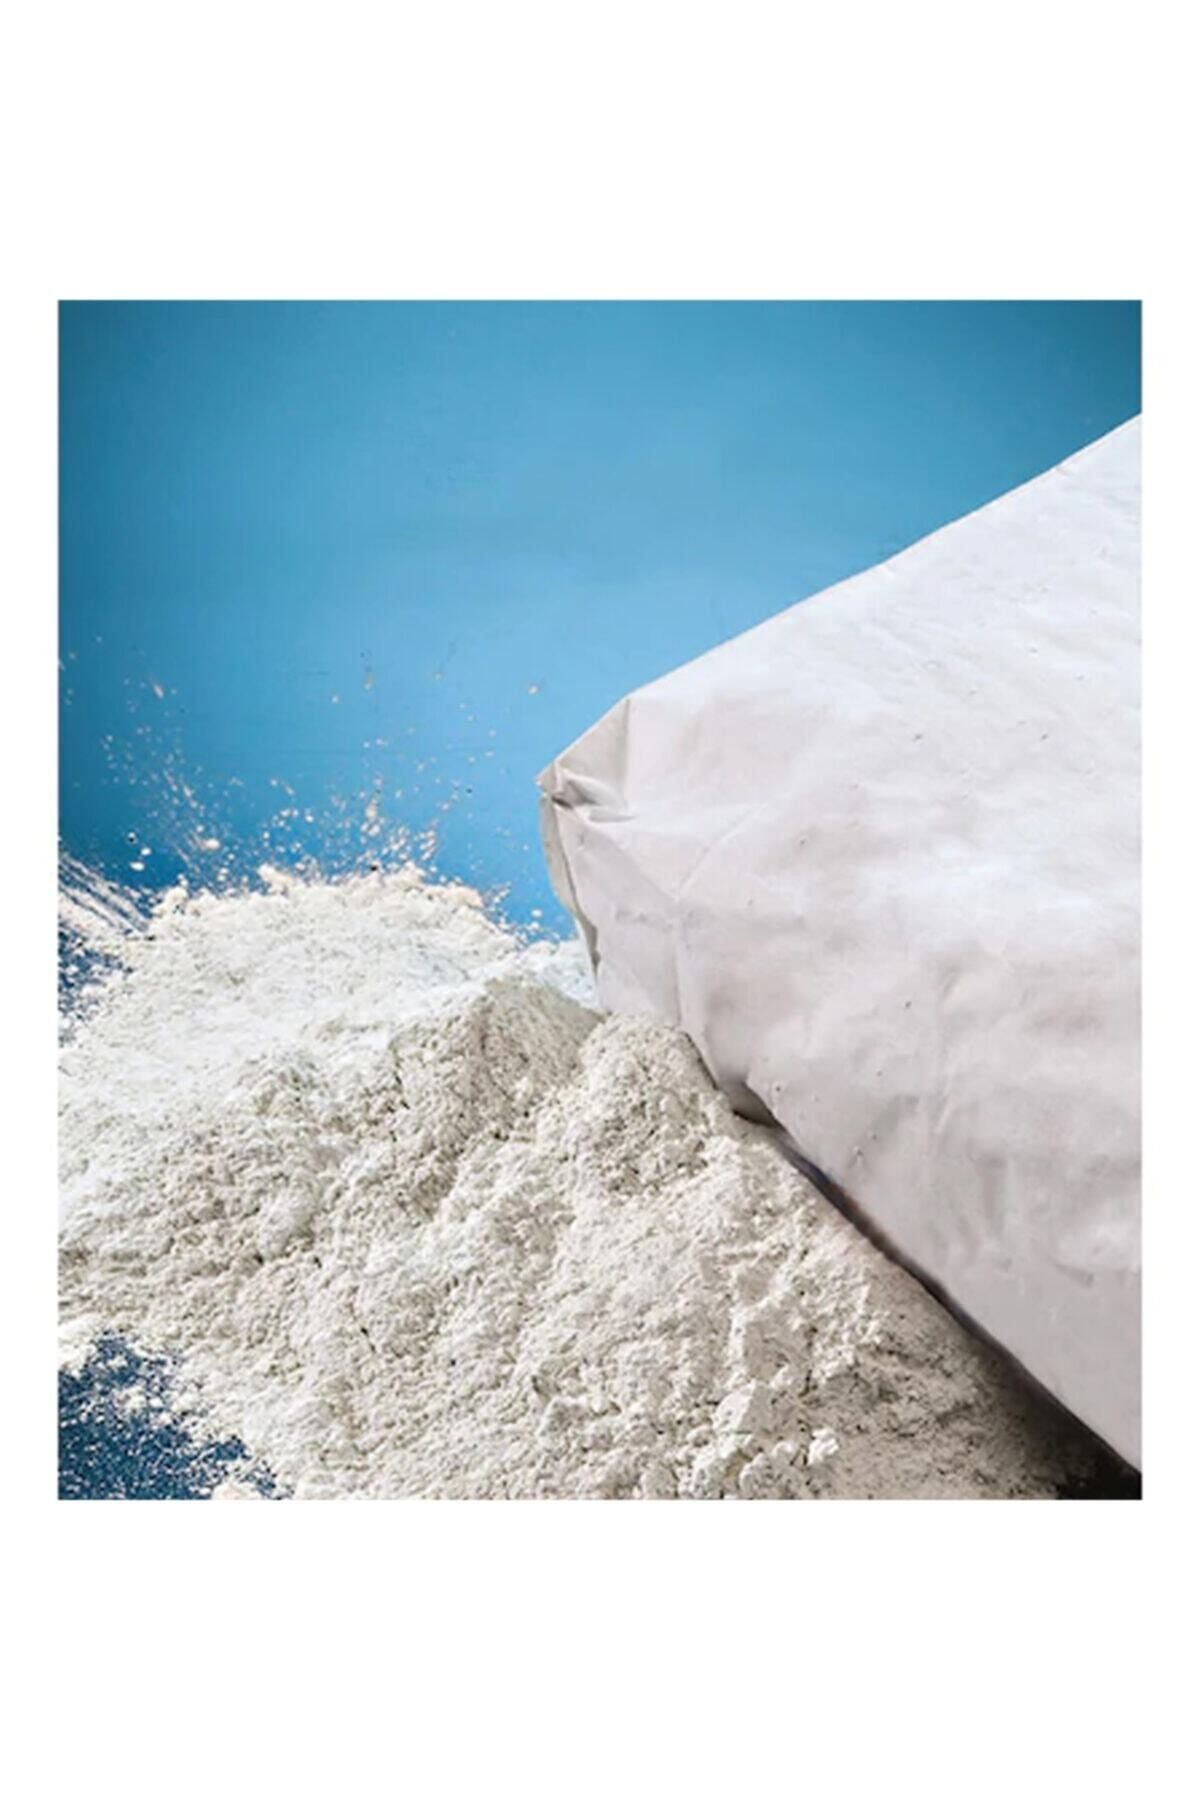 Sepetfy Beyaz Toz Çimento 10 Kg